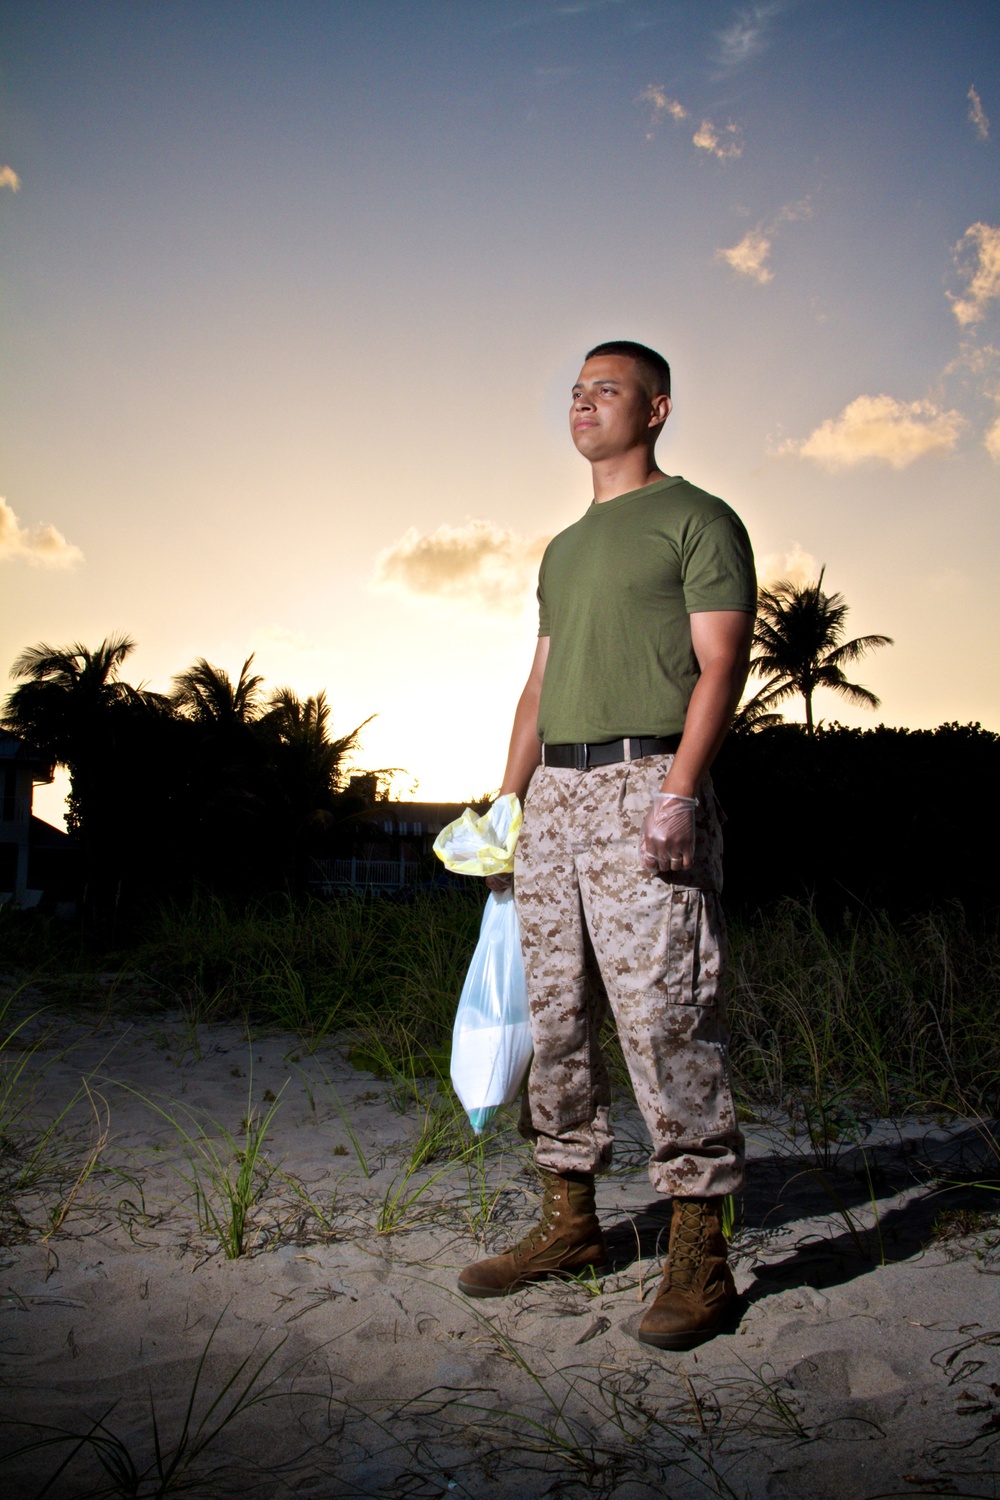 Marines clean south Florida beaches